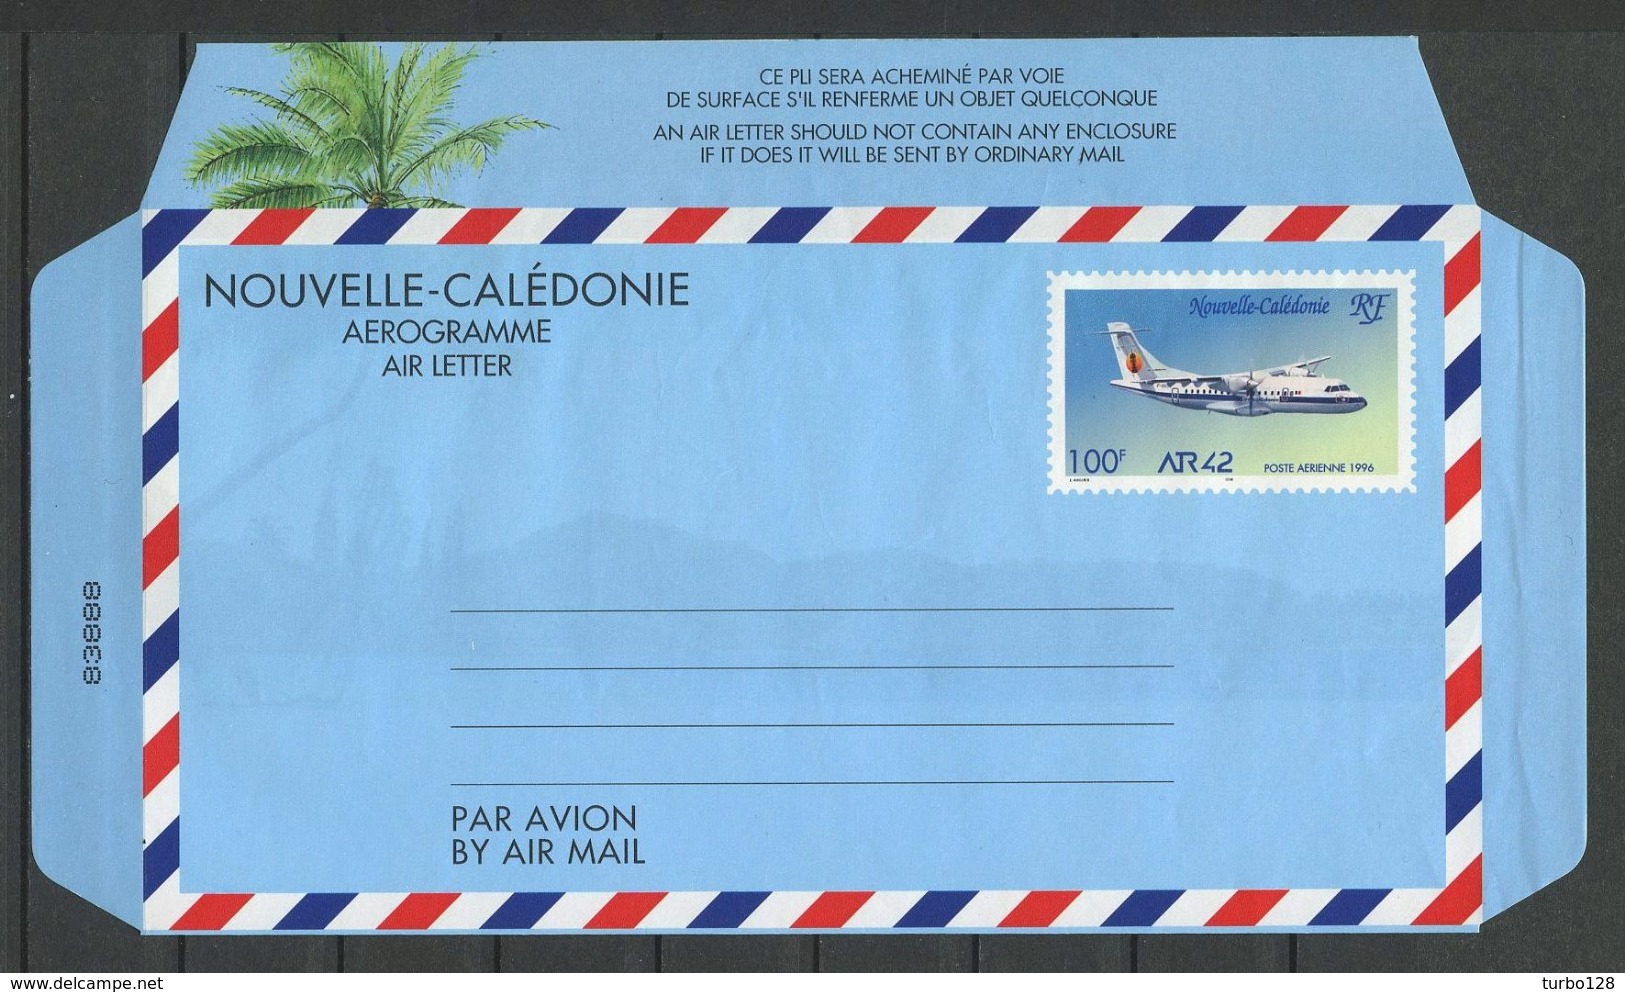 CALEDONIE Aérogramme 1996 N° 14 ** Neuf MNH Lègère Froissure Languette Droite Cote 10 &euro; Avion ATR 42 Planes Transpo - Aérogrammes